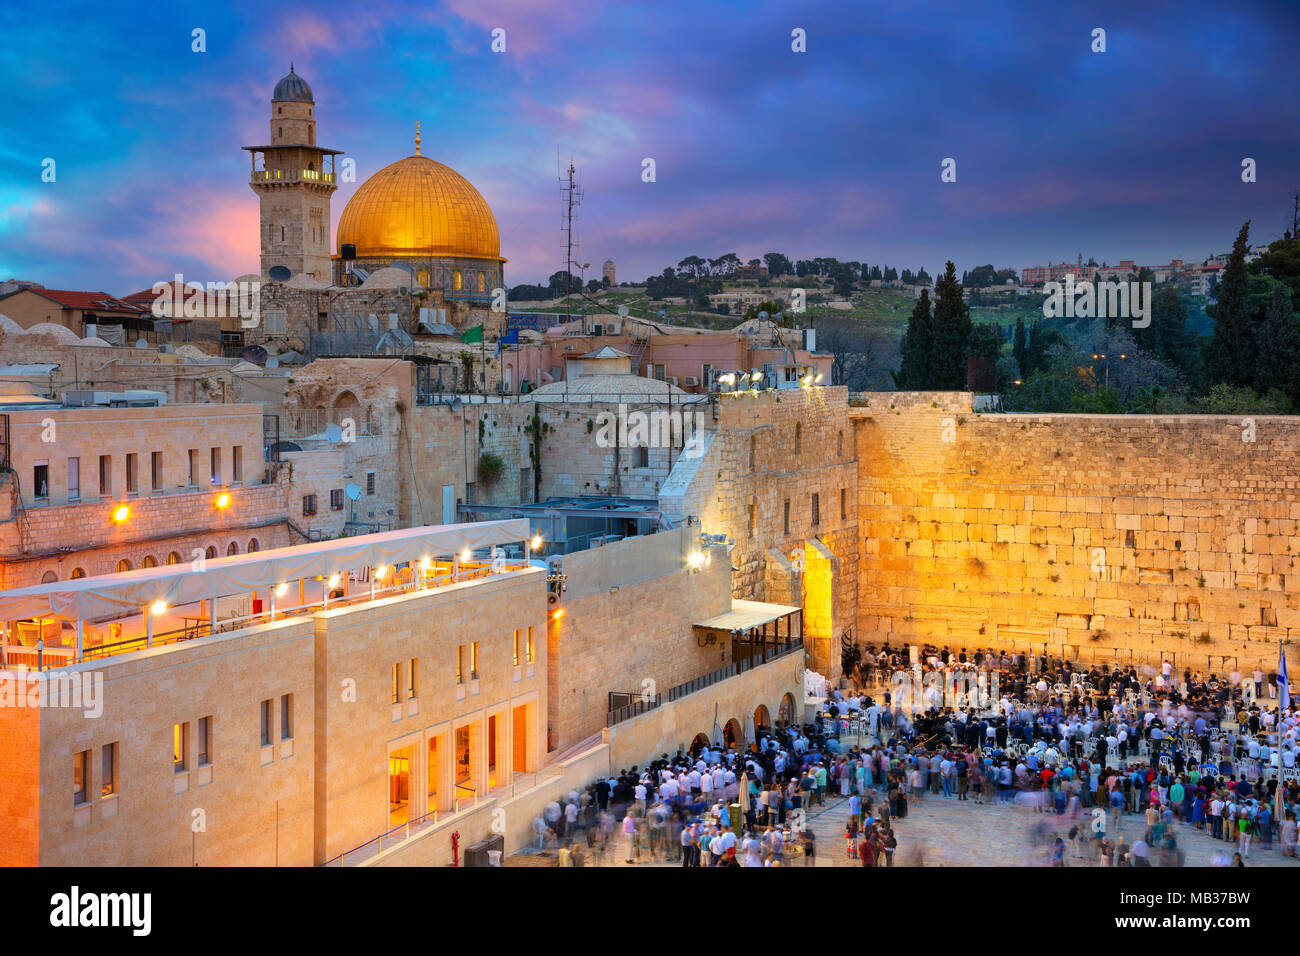 Gerusalemme. Immagine Cityscape di Gerusalemme, Israele con la Cupola della Roccia e il Muro Occidentale al tramonto. Foto Stock